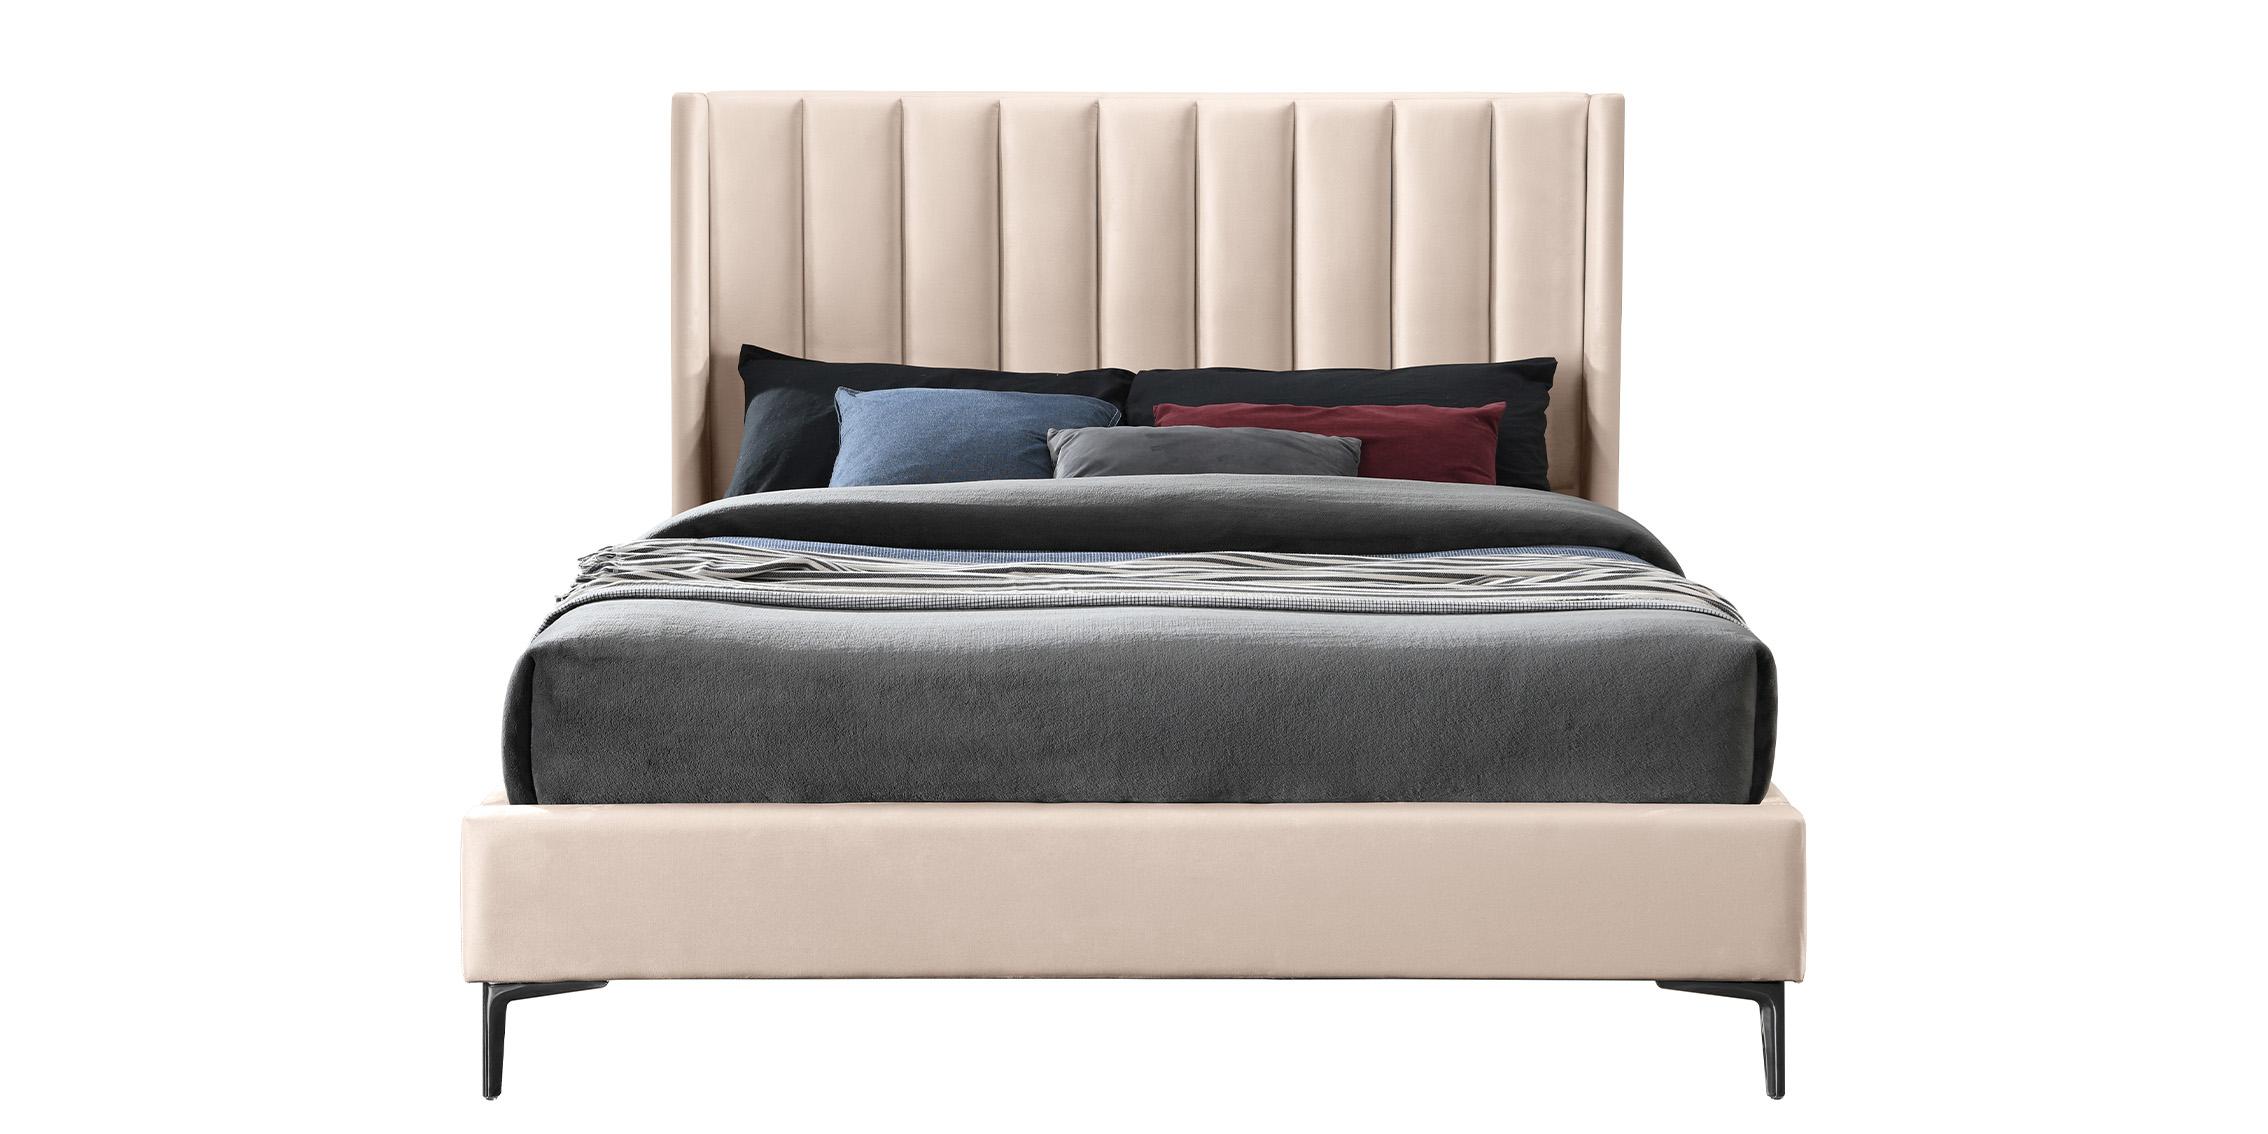 

    
NadiaPink-F Meridian Furniture Platform Bed
